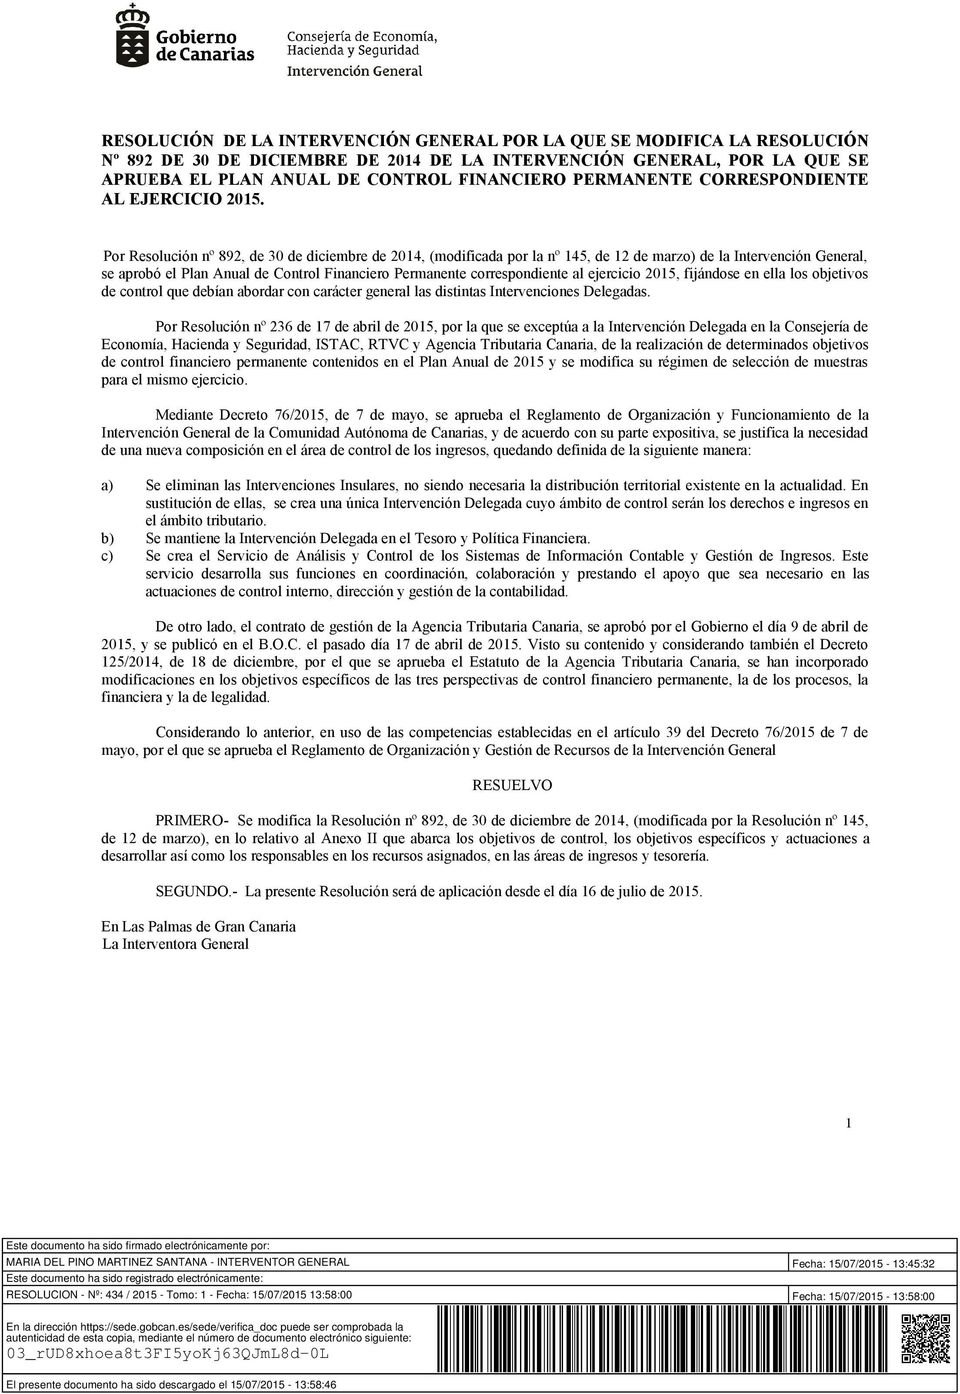 Por Resolución nº 892, de 30 de diciembre de 2014, (modificada por la nº 145, de 12 de marzo) de la Intervención General, se aprobó el Plan Anual de Control Financiero Permanente correspondiente al